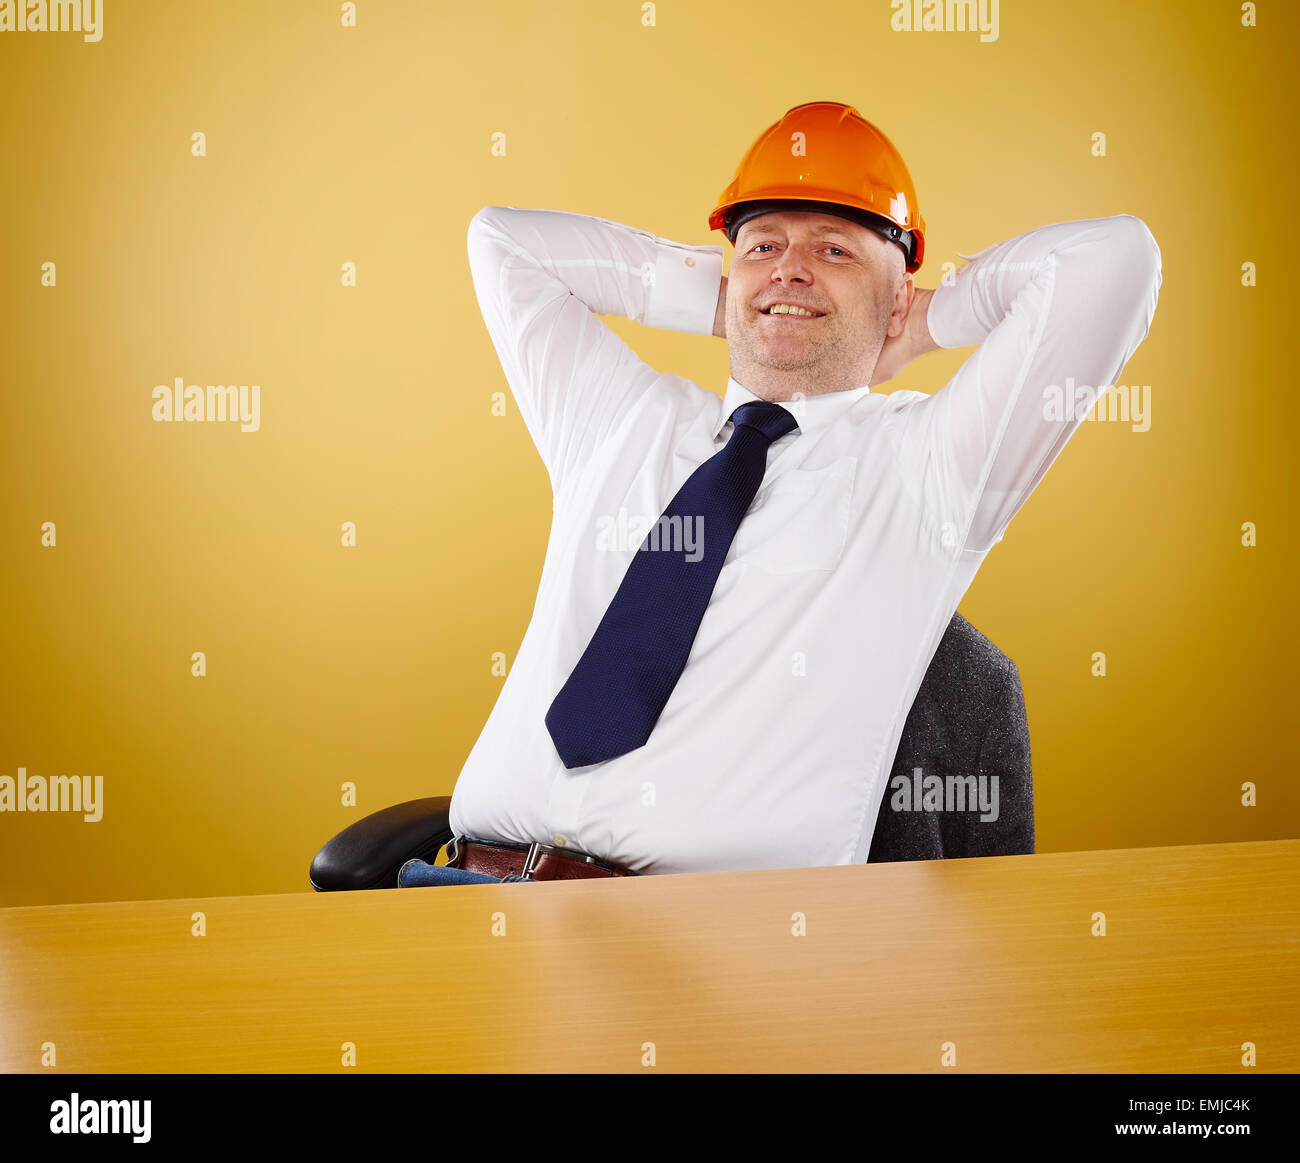 Ingegnere maschio in ufficio egli indossa una camicia bianca e cravatta, capo egli indossa una veste arancione elmetto Foto Stock